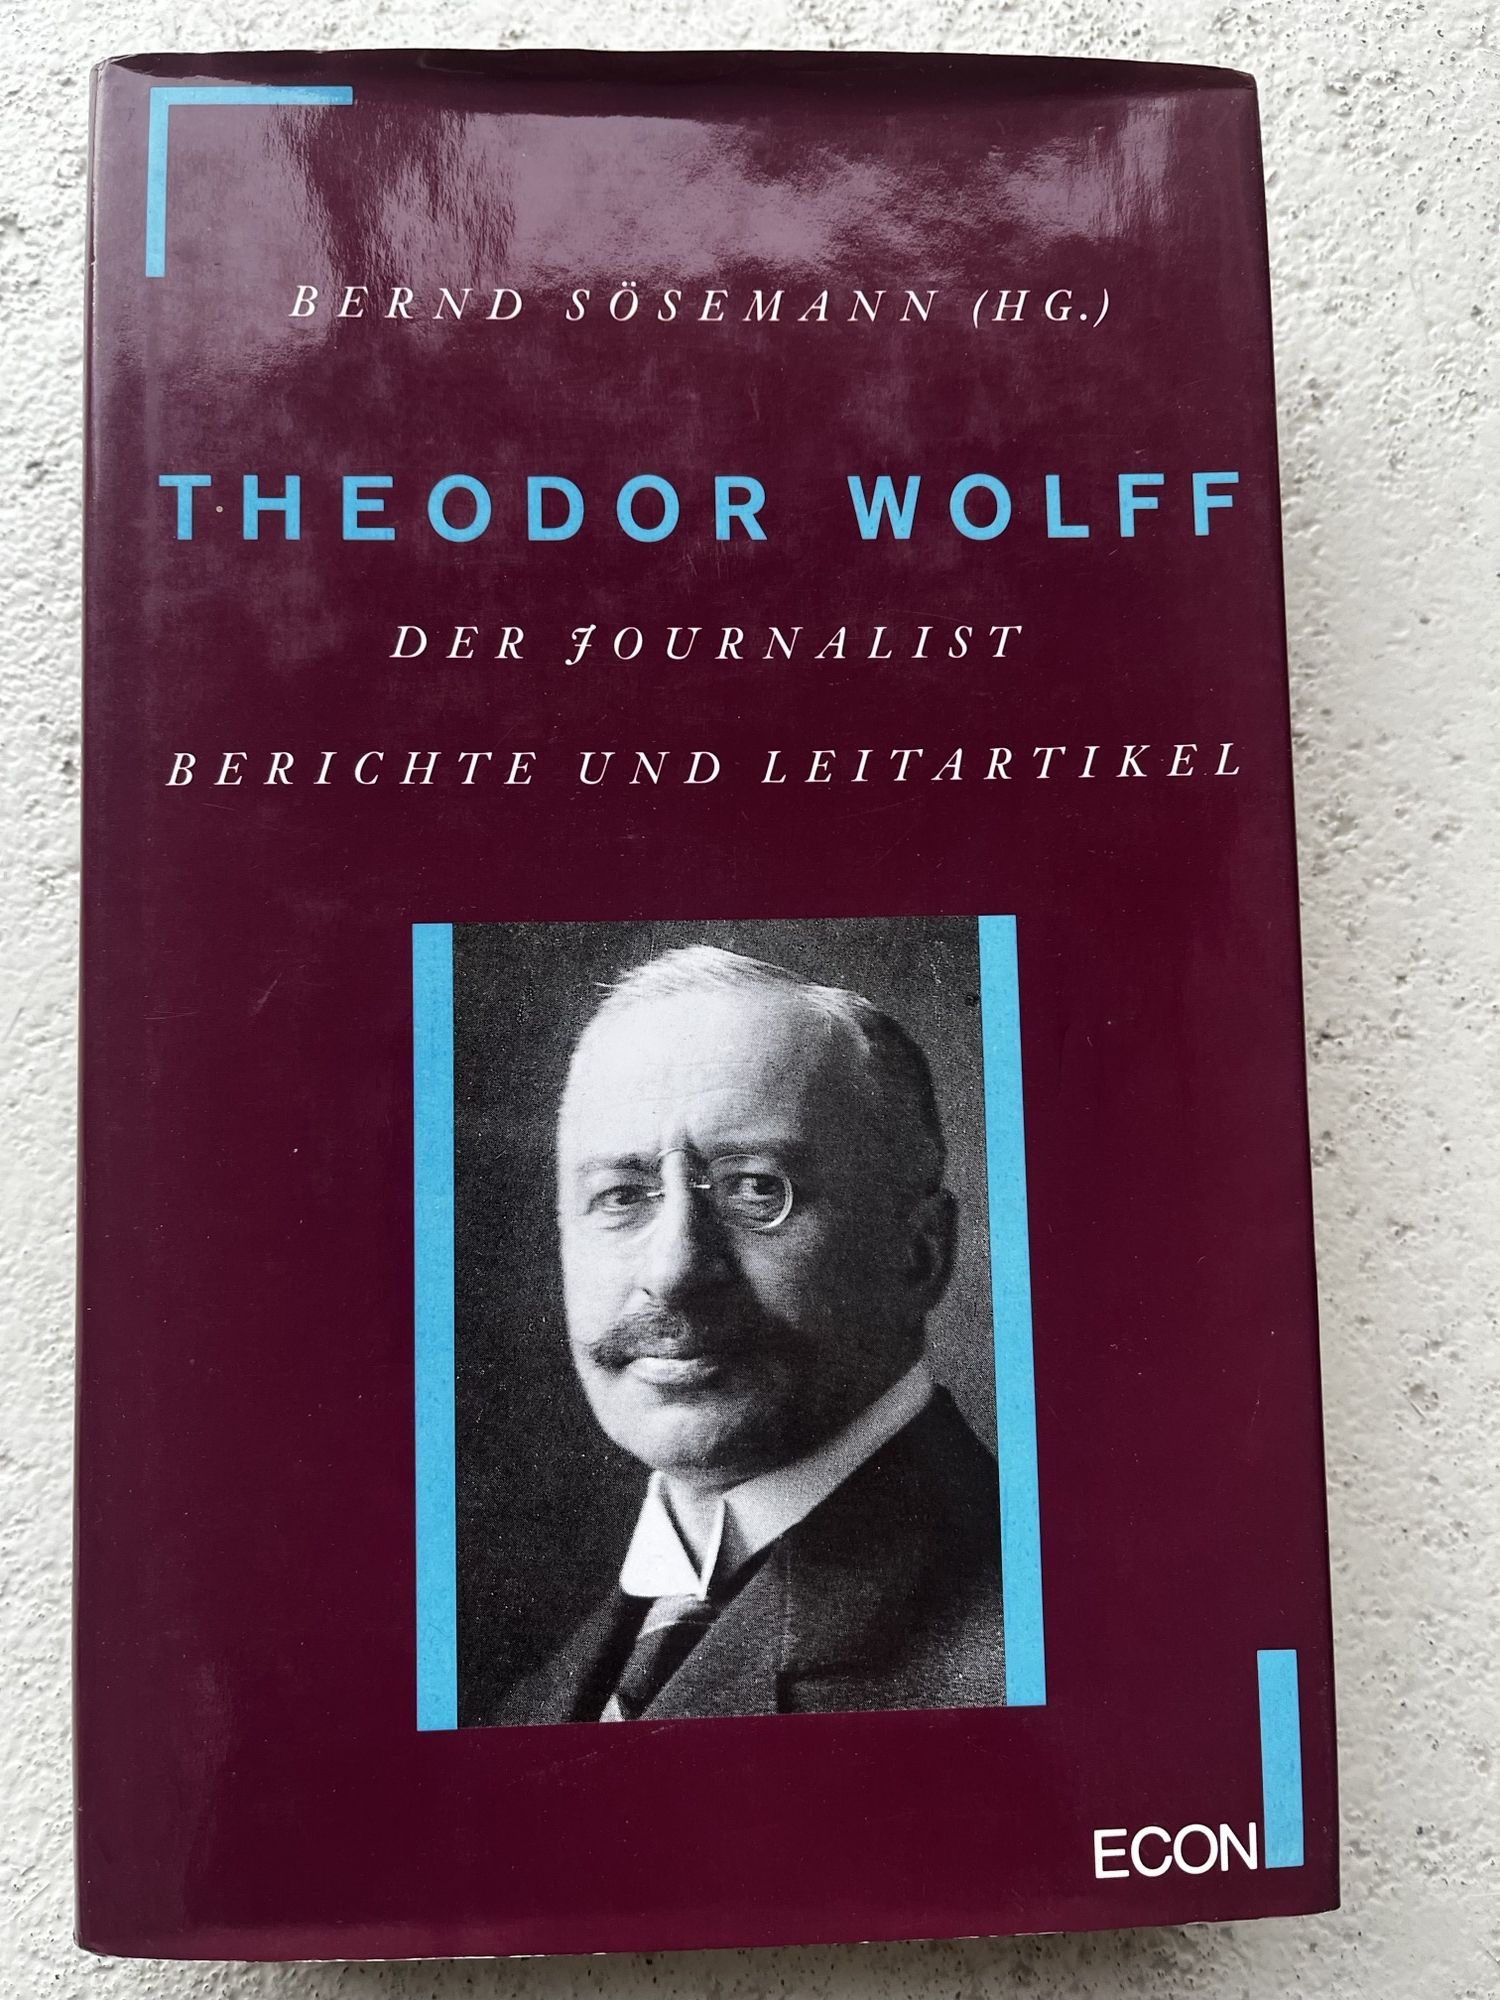 Theodor Wolff, Der Journalist, Berichte und Leitartikel - Bernd Sösemann (Hg.), Theodor Wolff